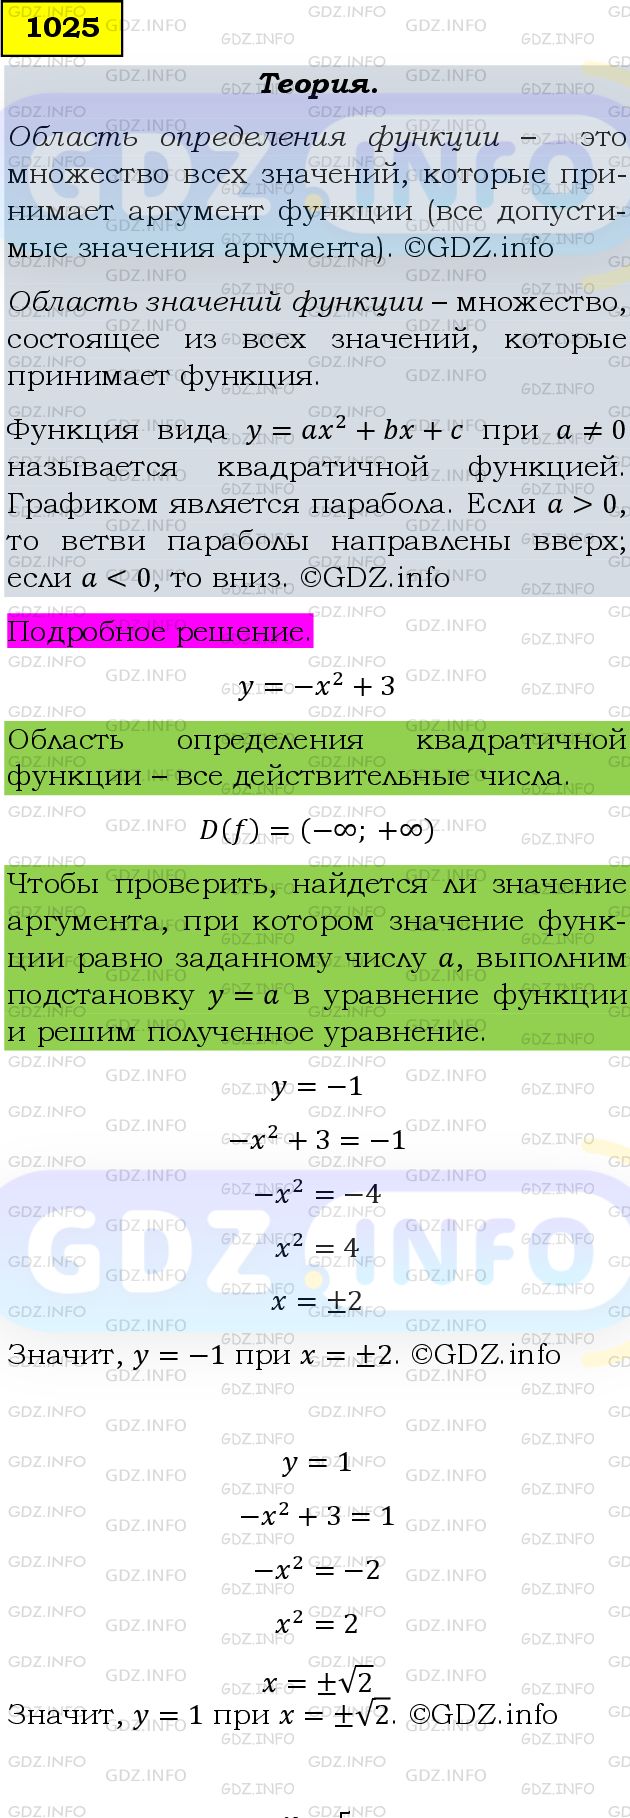 Фото подробного решения: Номер задания №1025 из ГДЗ по Алгебре 9 класс: Макарычев Ю.Н.